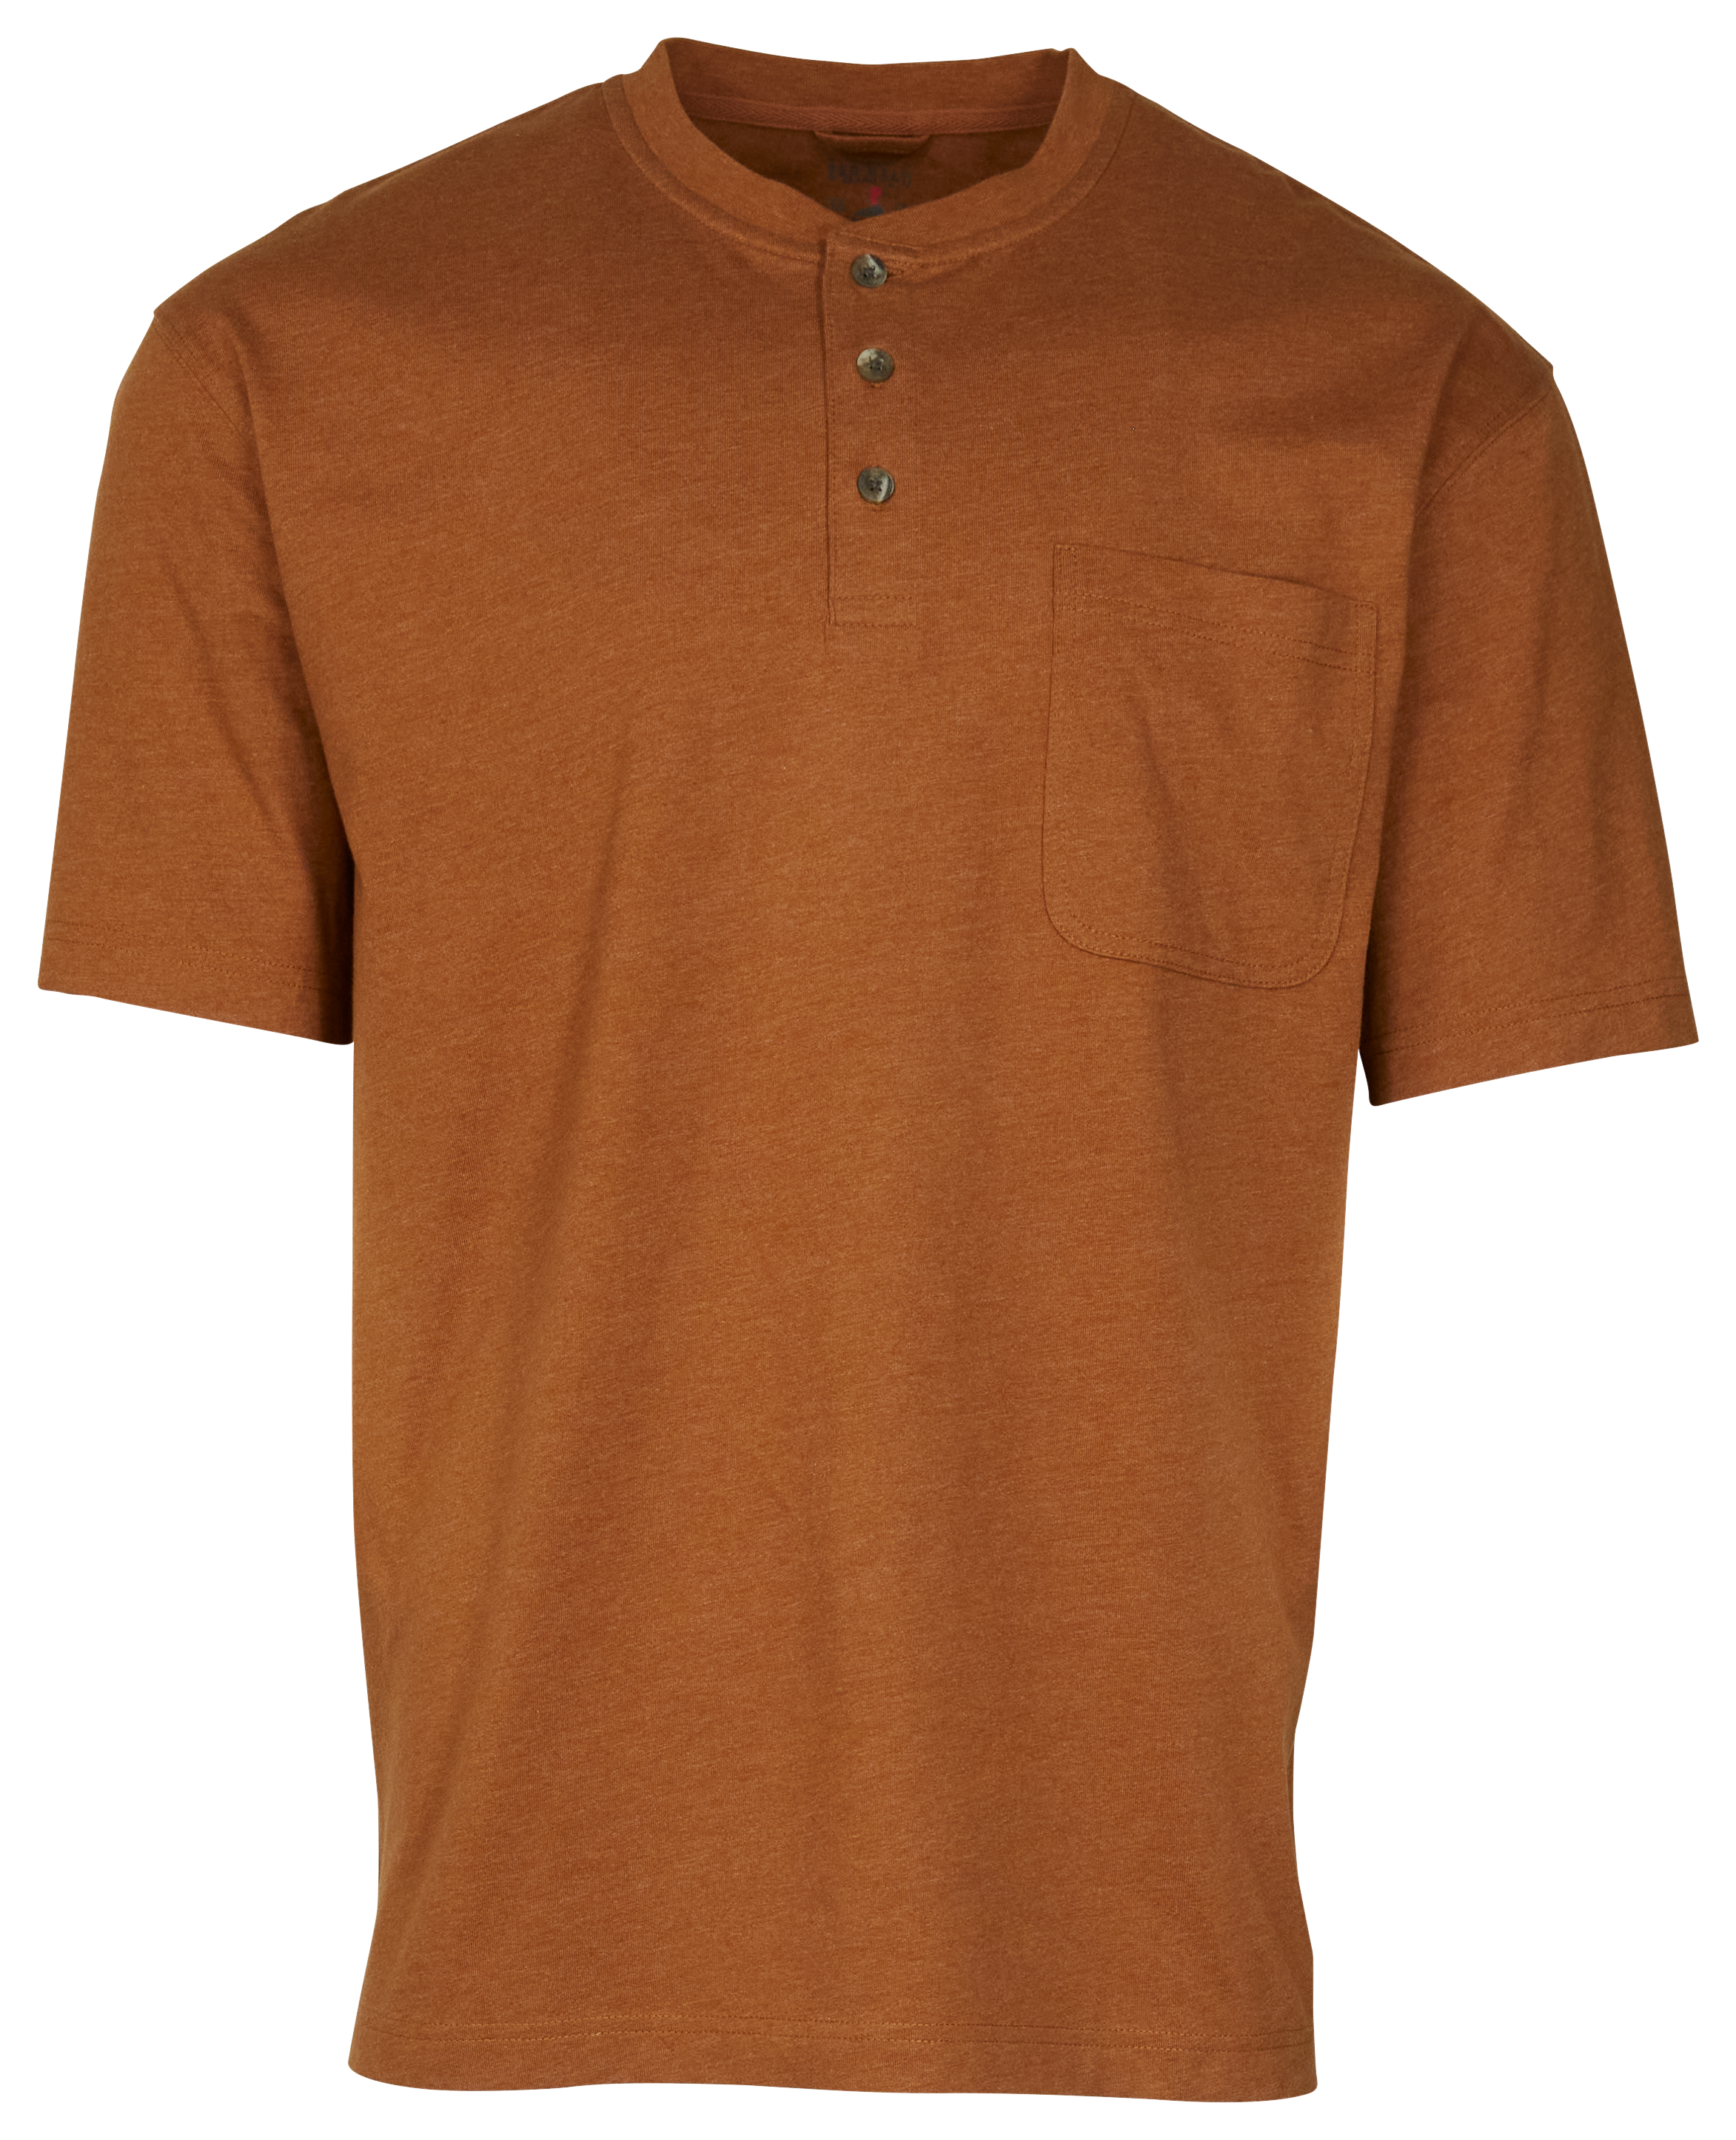 RedHead Henley Pocket Short-Sleeve Shirt for Men - Bronze Heather - 3XL